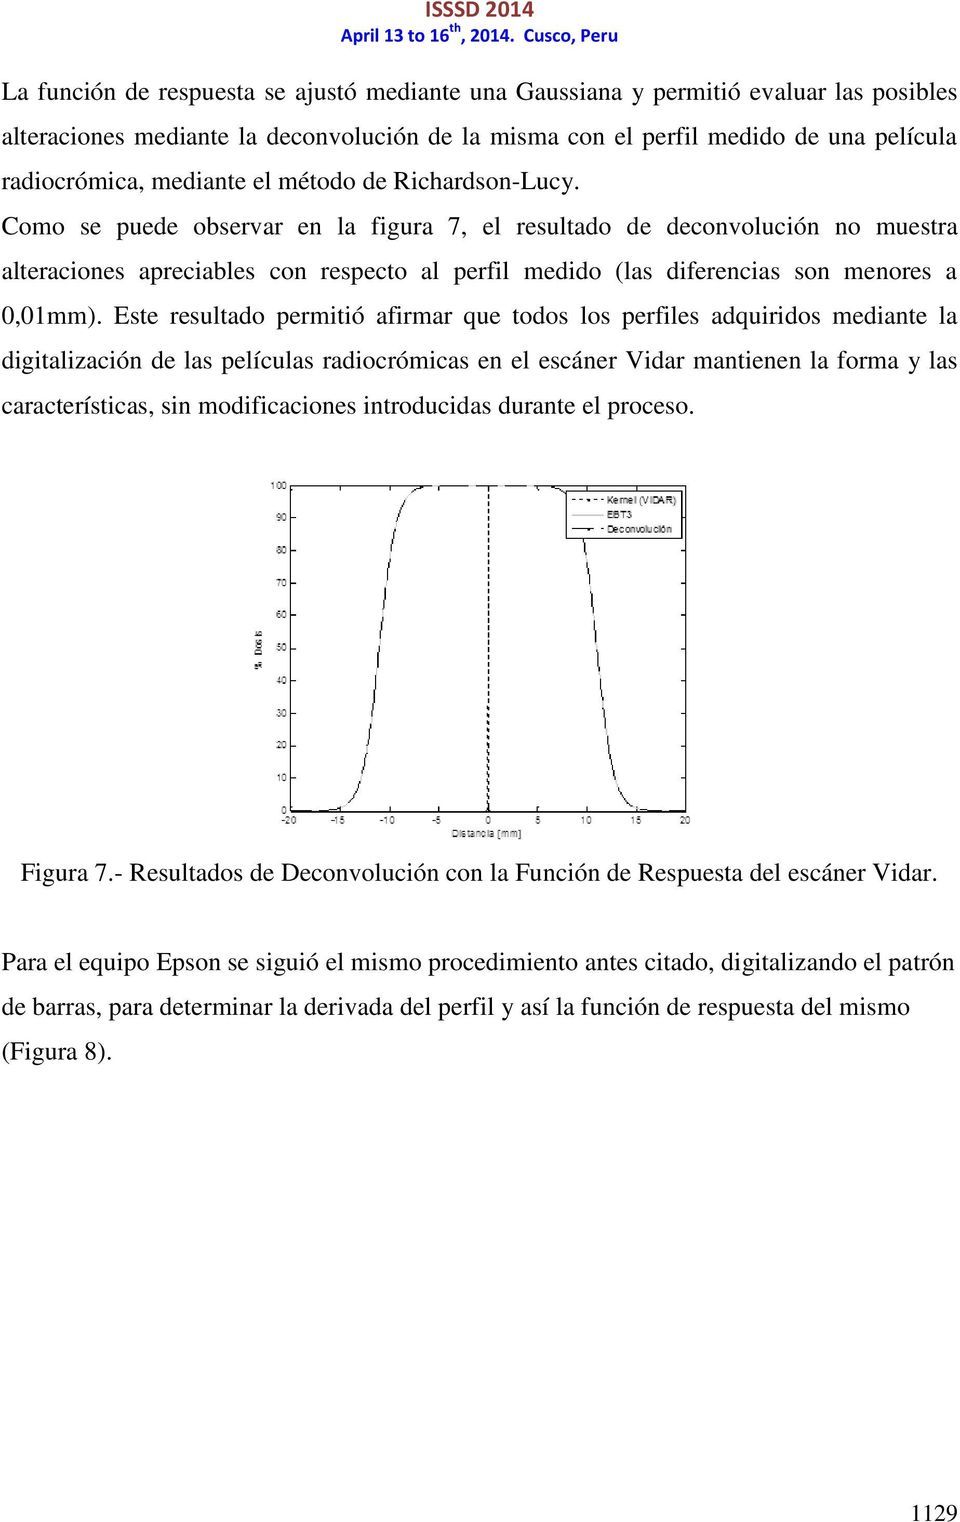 Como se puede observar en la figura 7, el resultado de deconvolución no muestra alteraciones apreciables con respecto al perfil medido (las diferencias son menores a 0,01mm).